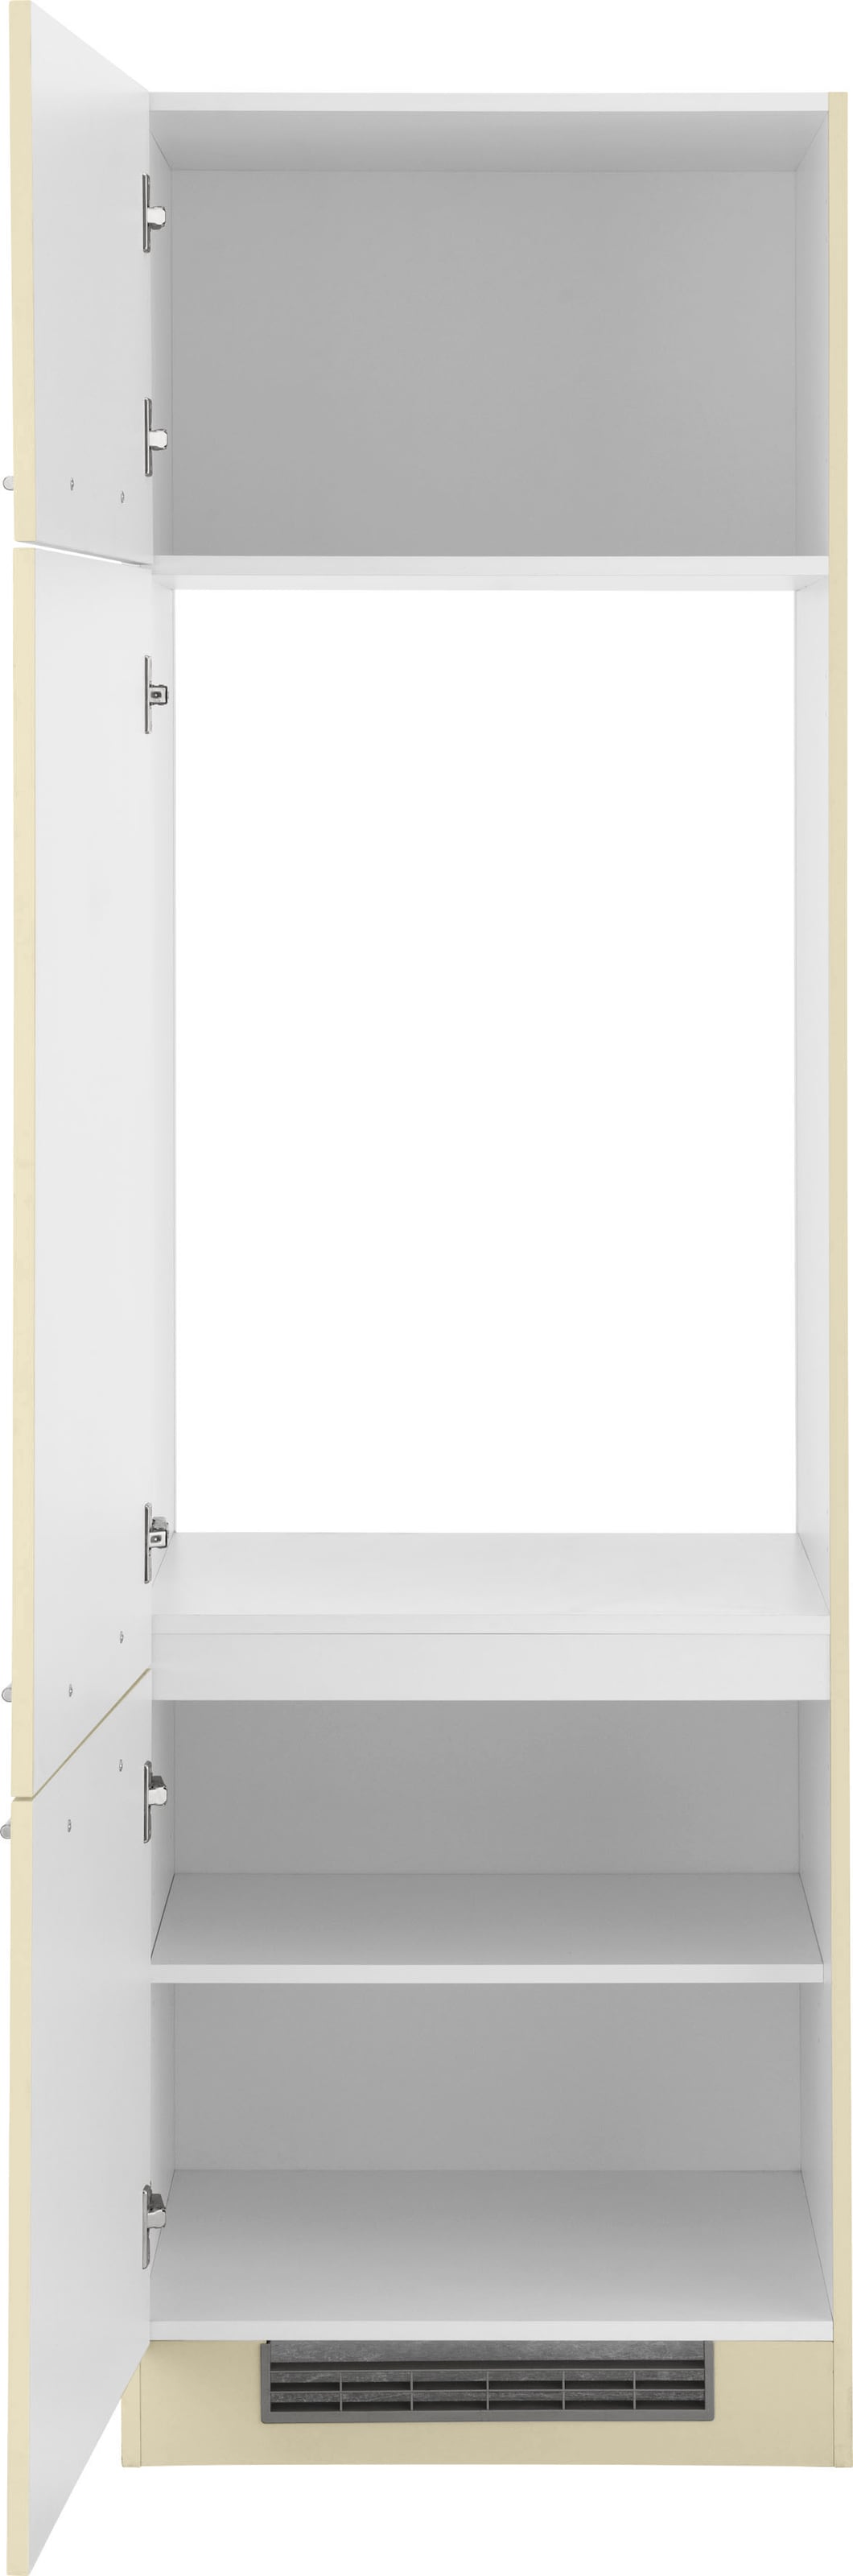 Küchen ohne breit, »Unna«, online kaufen Kühlumbauschrank E-Gerät 60 cm wiho